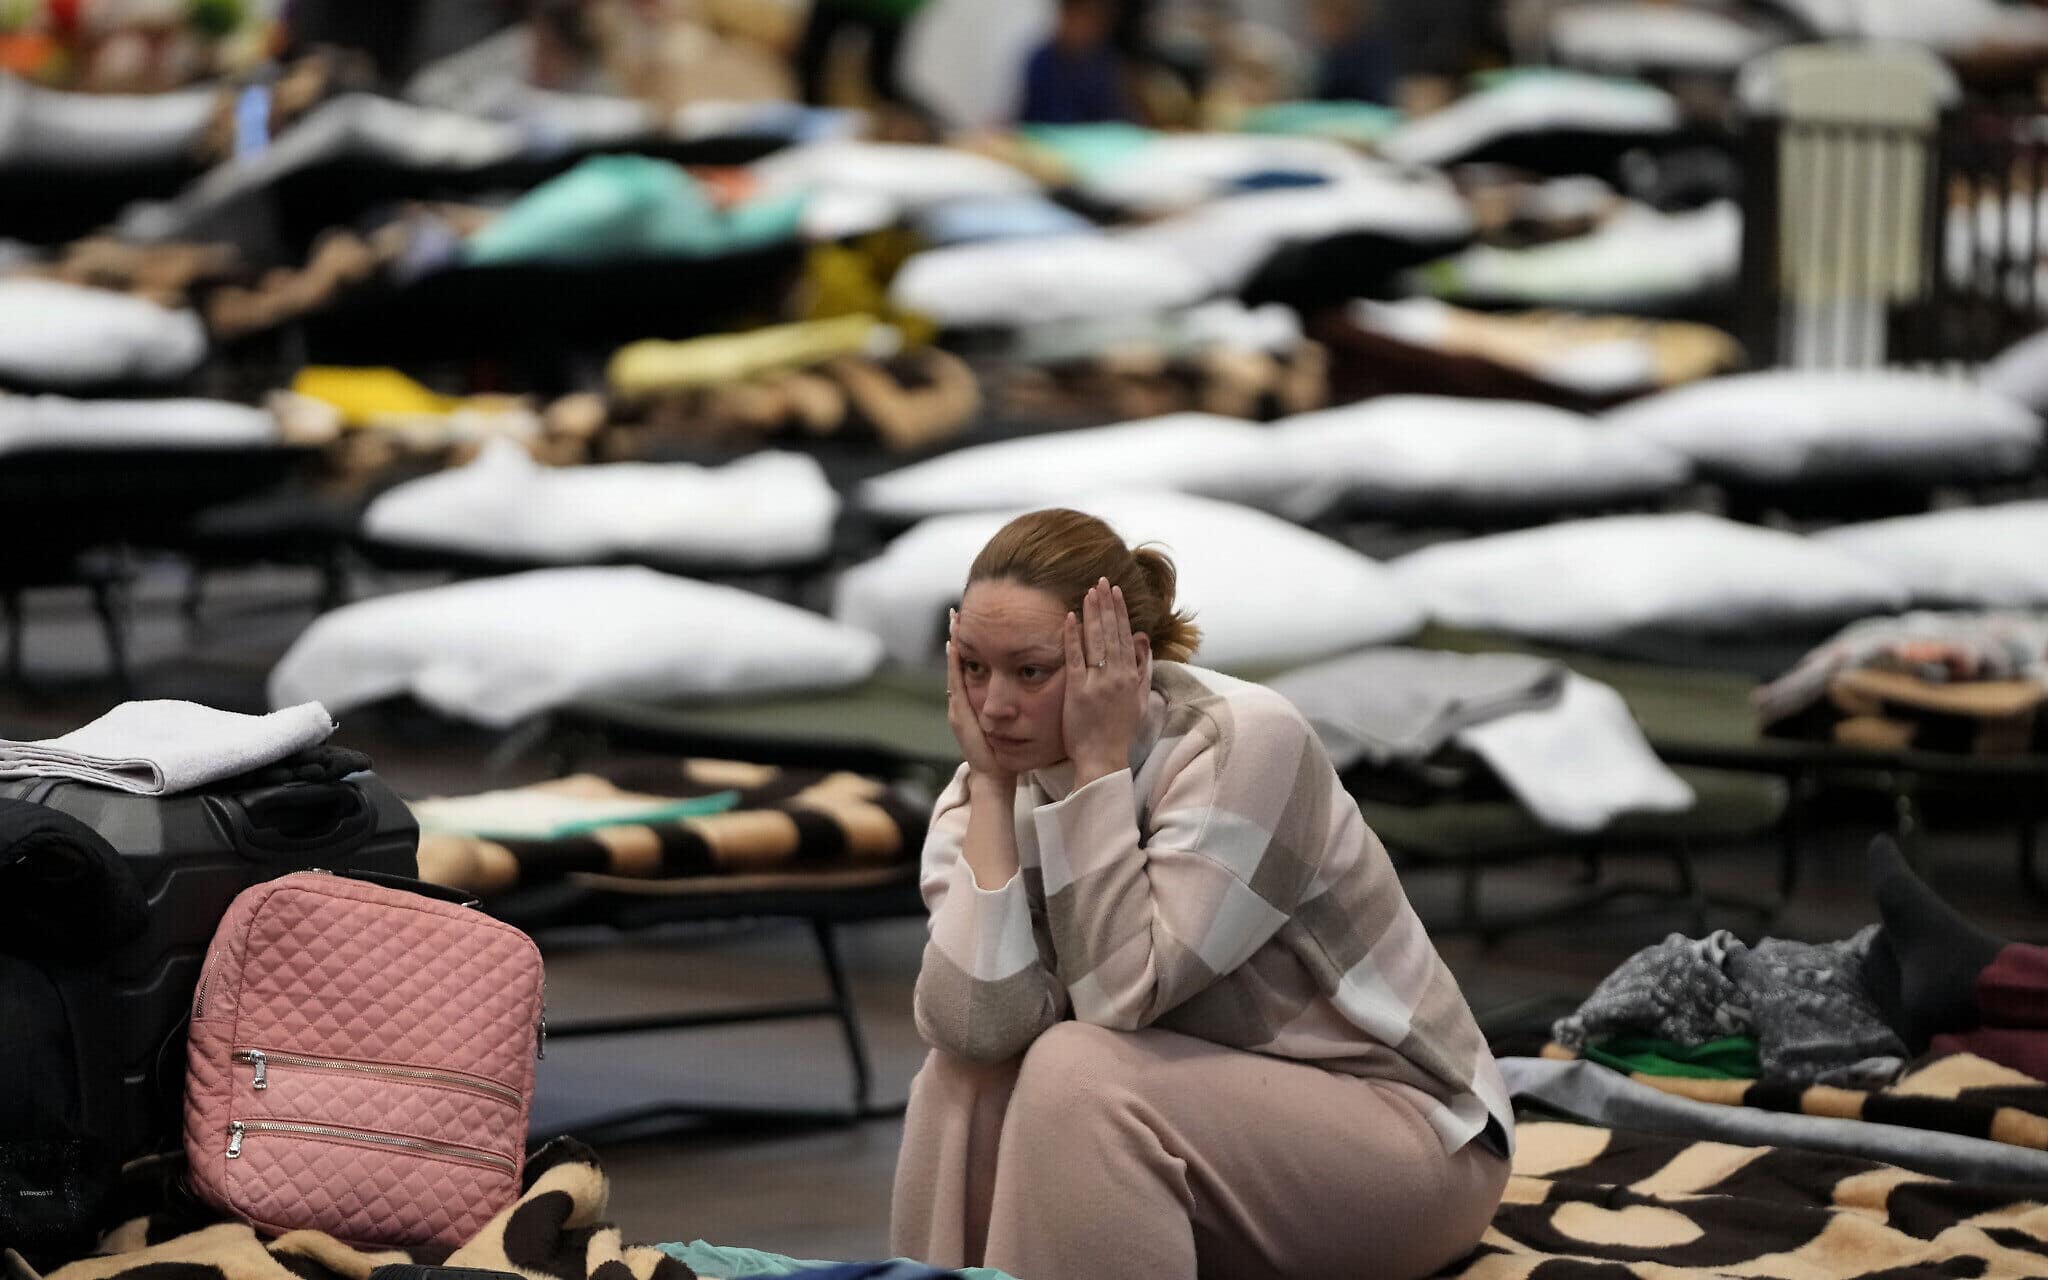 אישה בוכה במקלט לפליטים מאוקראינה באולם התעמלות בפשמישל, פולין, 8 במרץ 2022 (צילום: AP Photo/Markus Schreiber)